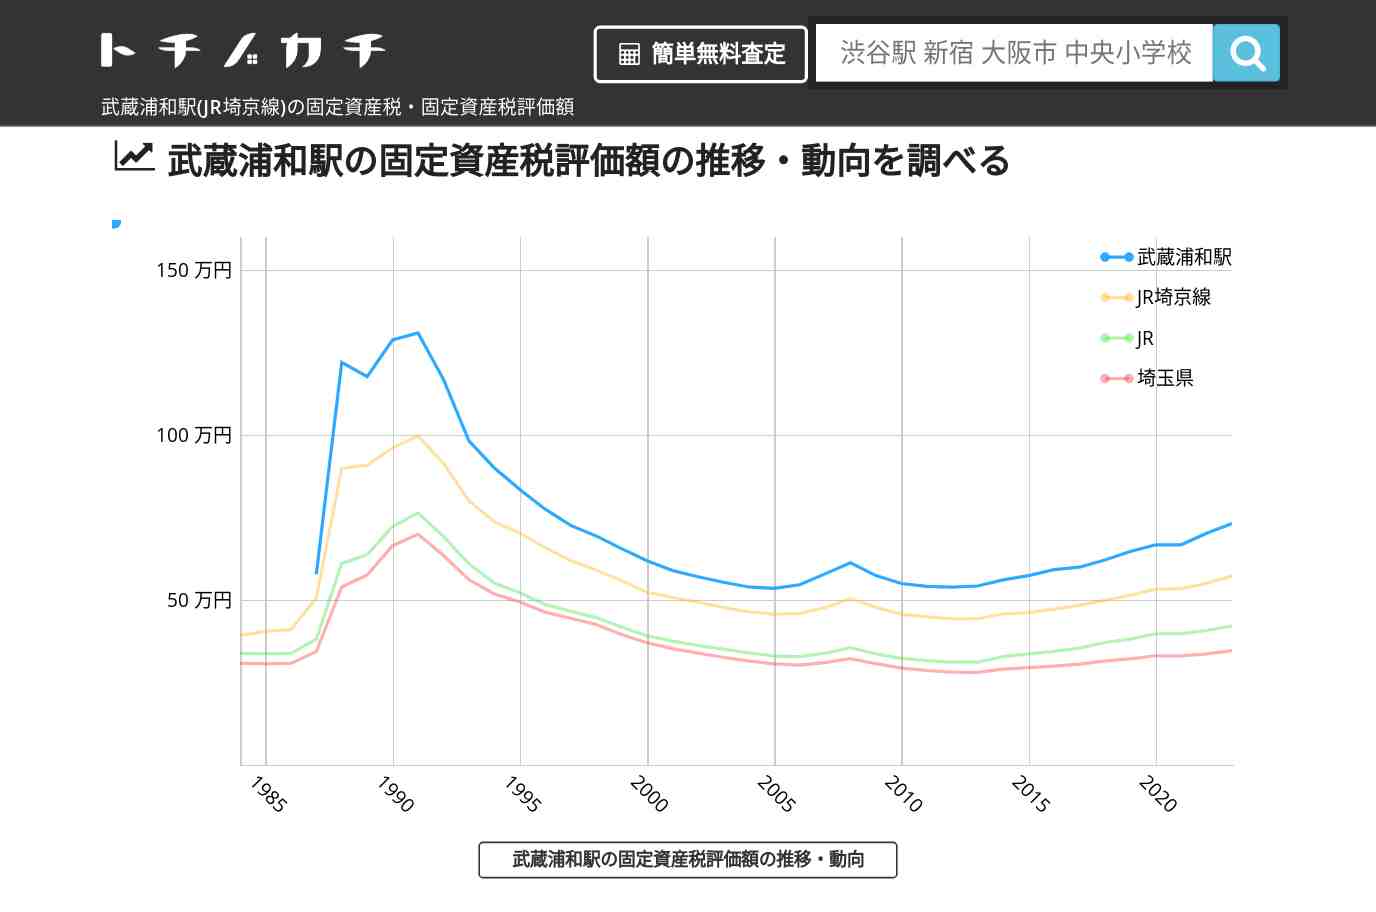 武蔵浦和駅(JR埼京線)の固定資産税・固定資産税評価額 | トチノカチ